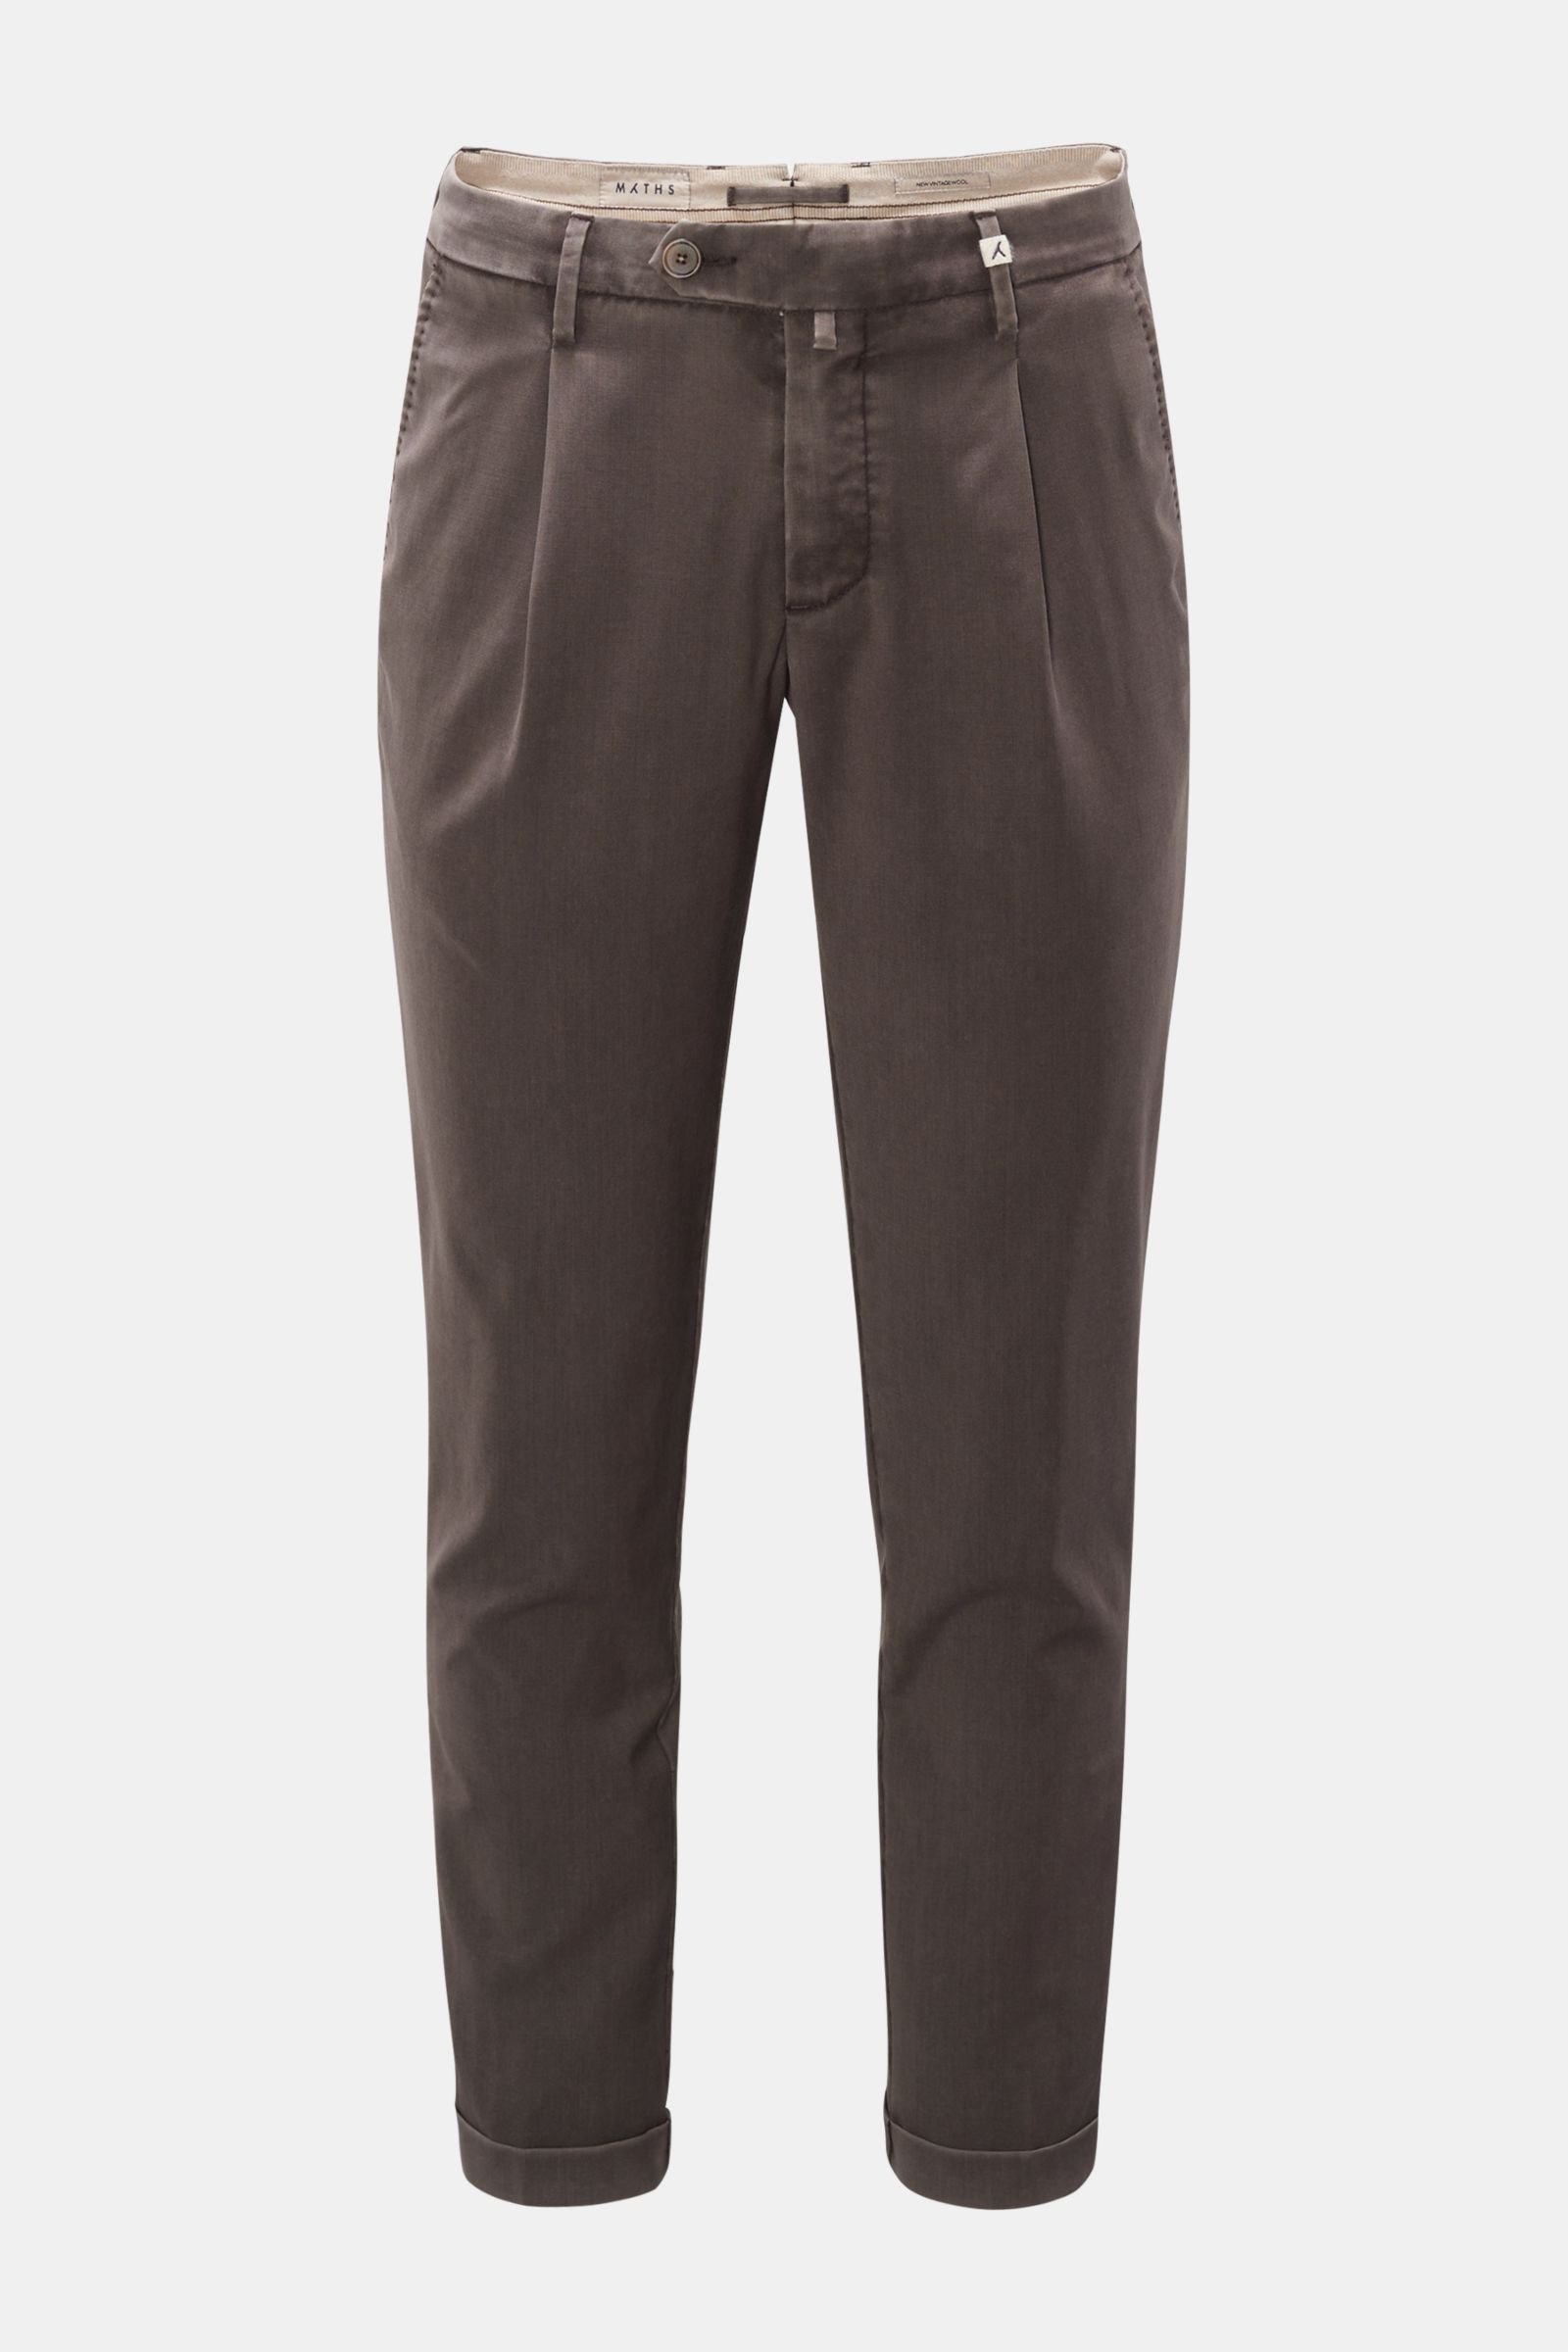 Wool trousers grey-brown